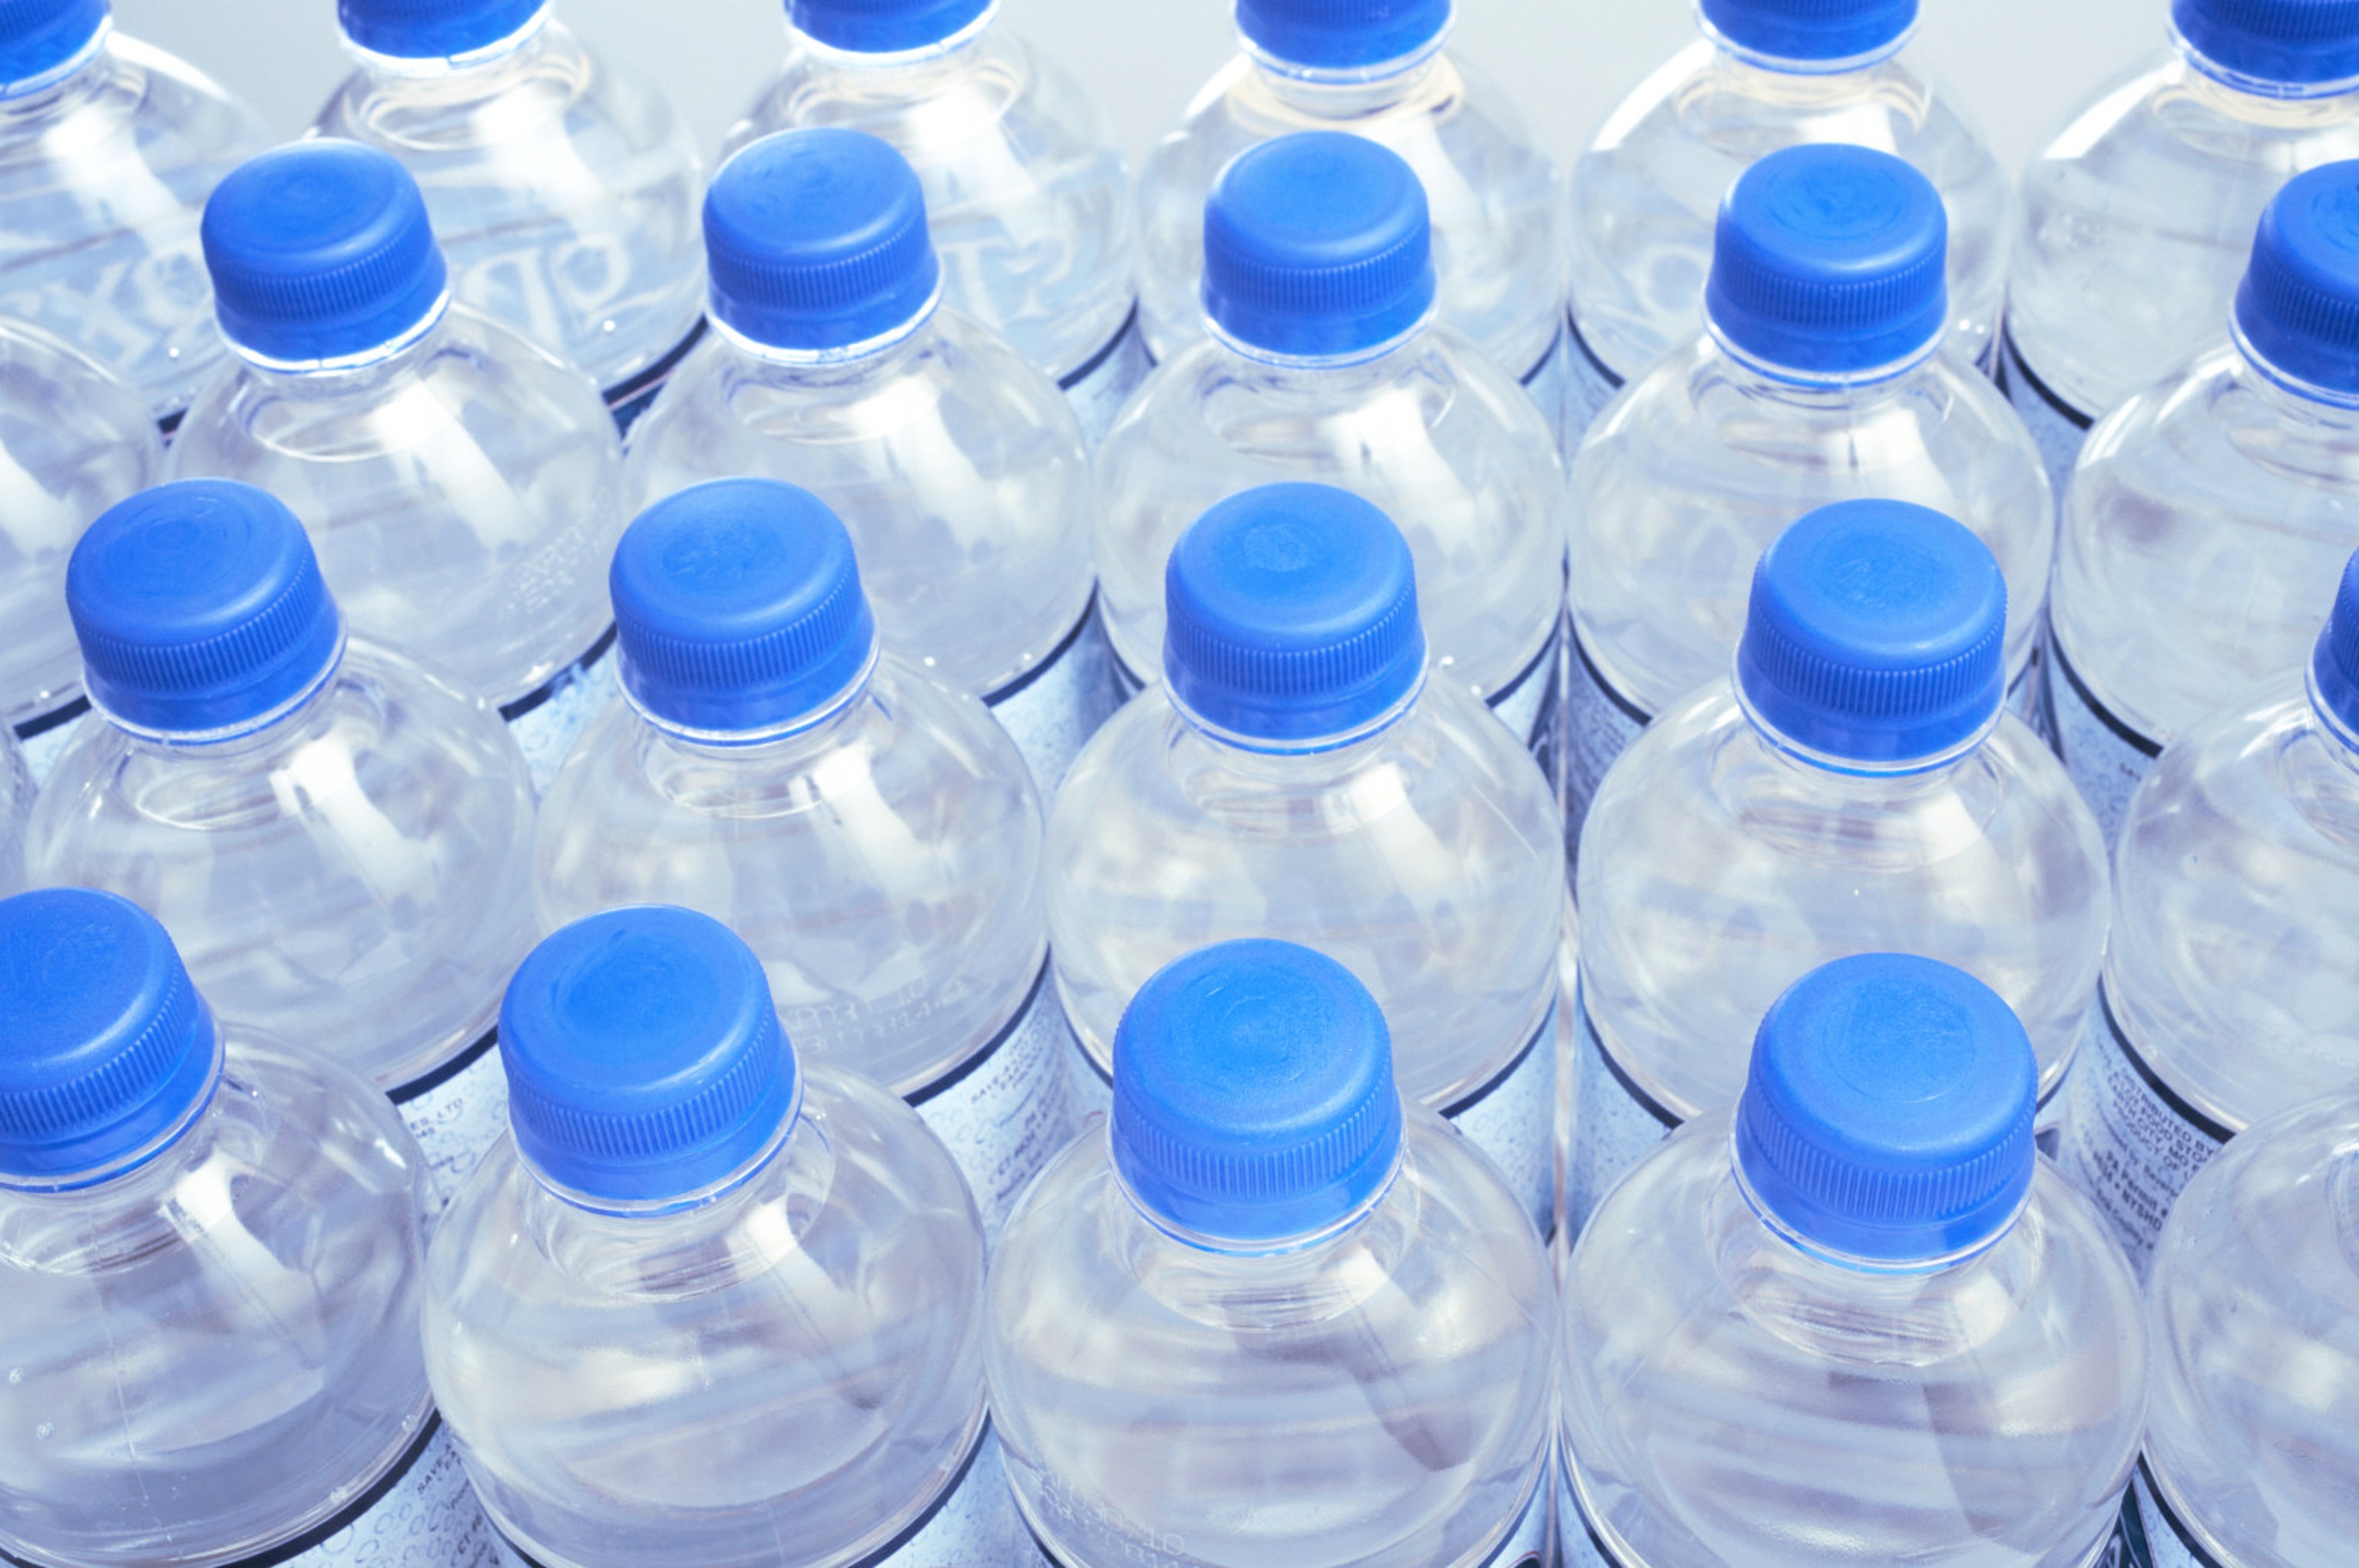 Свежая питьевая вода. Красивые пластиковые бутылки. Бутылка для воды. Бутылки для питьевой воды пластиковые. Пластик бутыл вода.